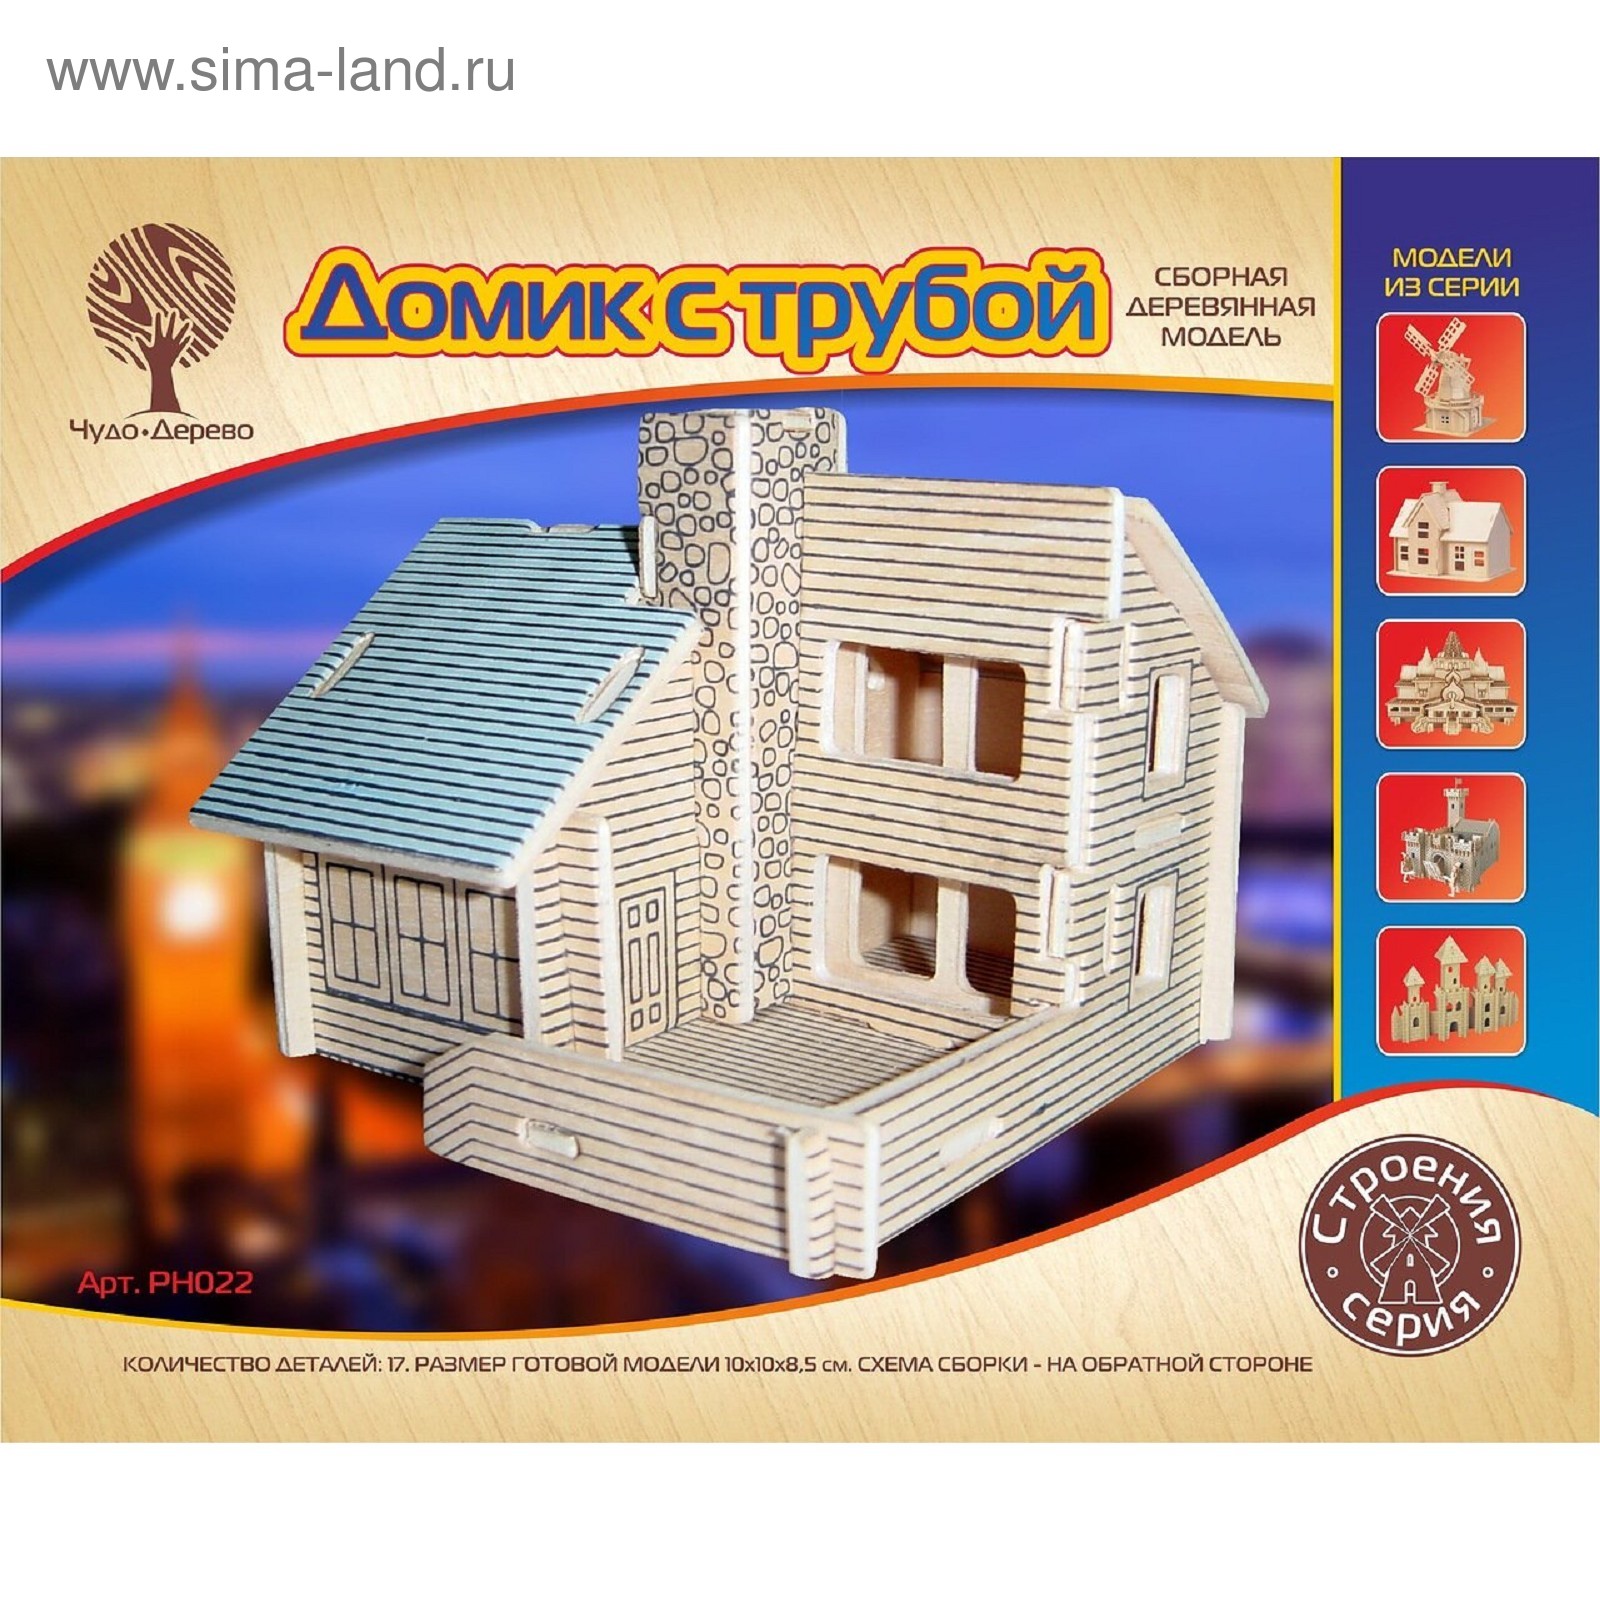 3D-модель сборная деревянная Чудо-Дерево «Дом с трубой» (4614215) - Купить  по цене от 251.00 руб. | Интернет магазин SIMA-LAND.RU